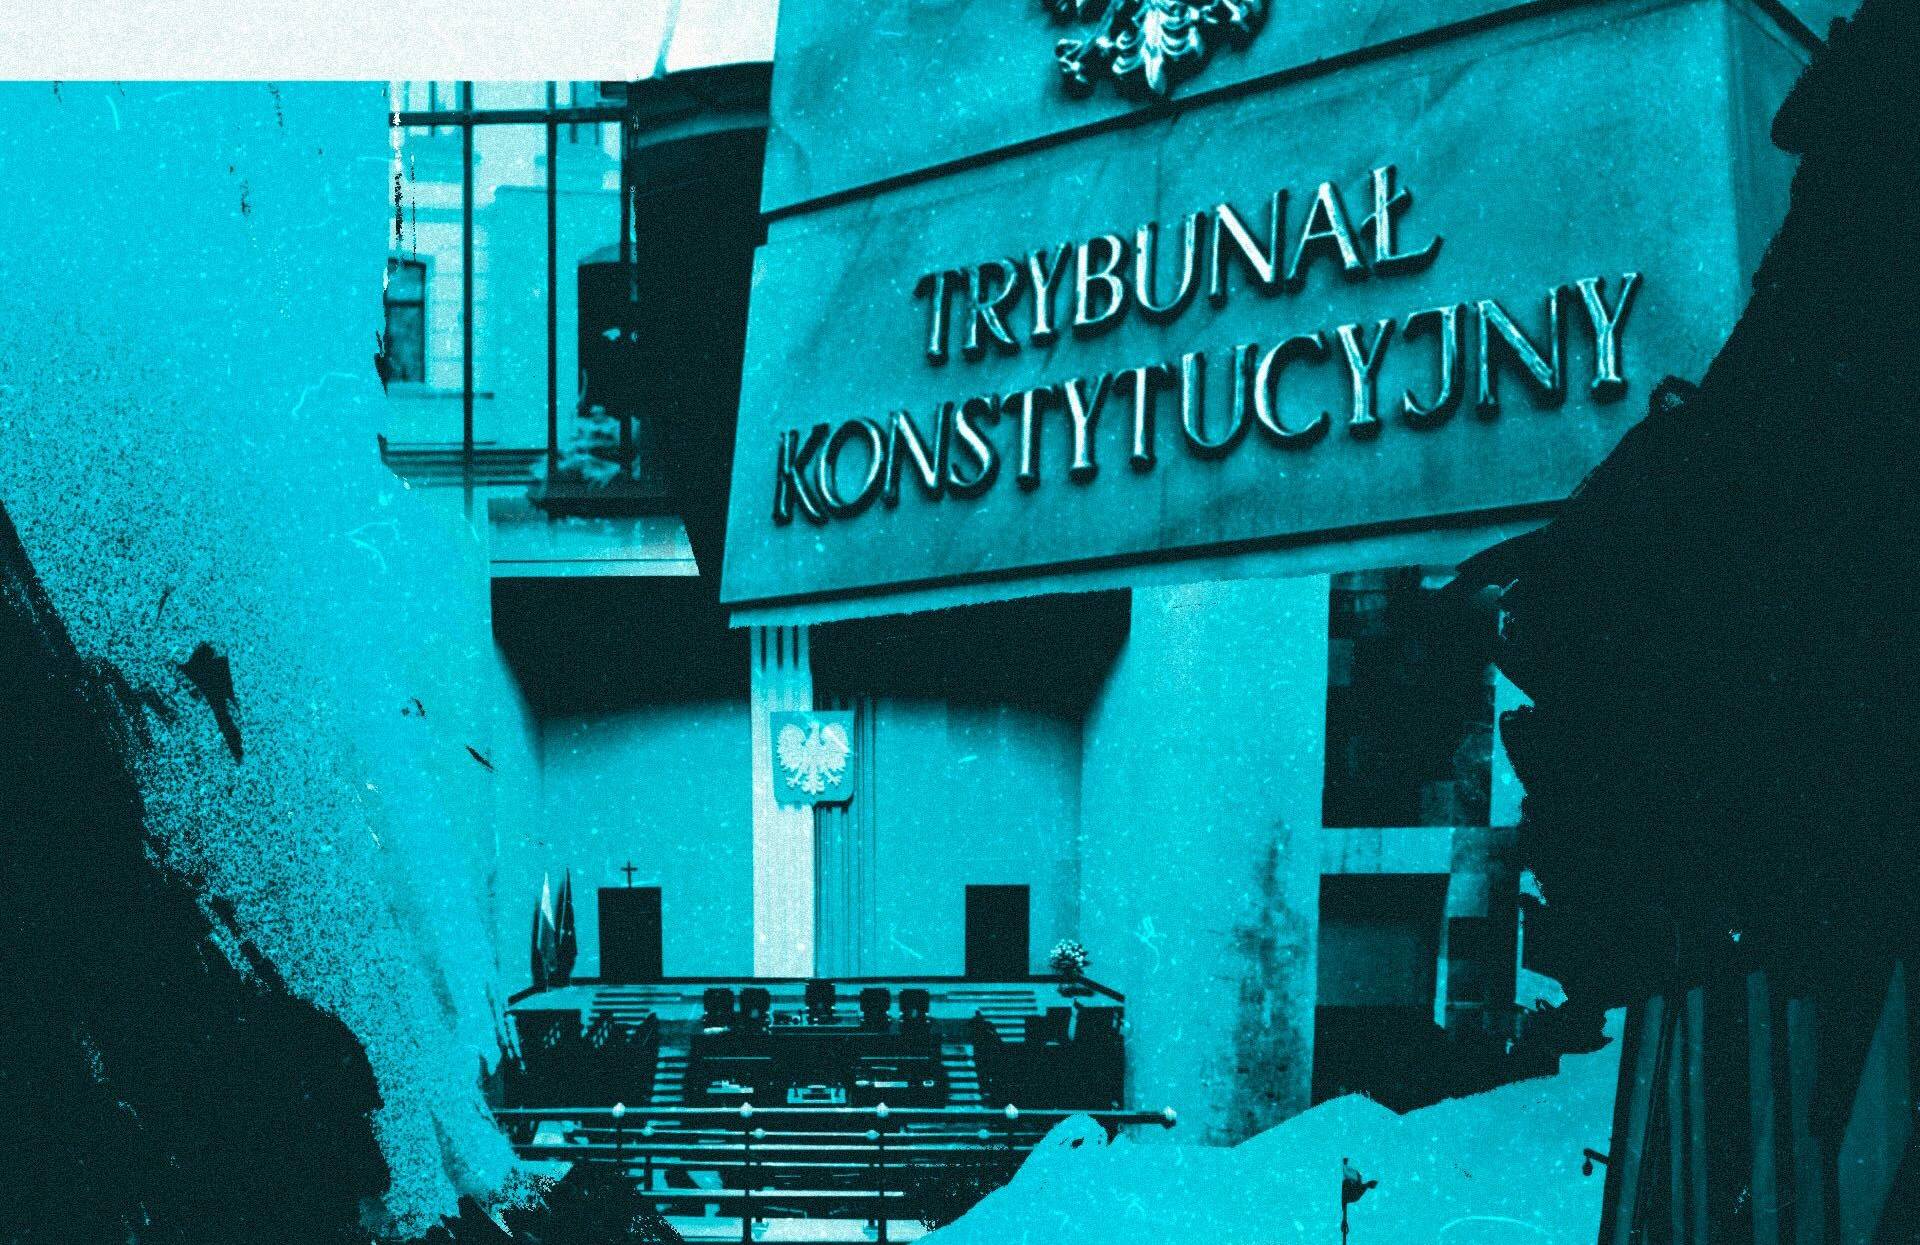 Tybunał Konstytucyjny